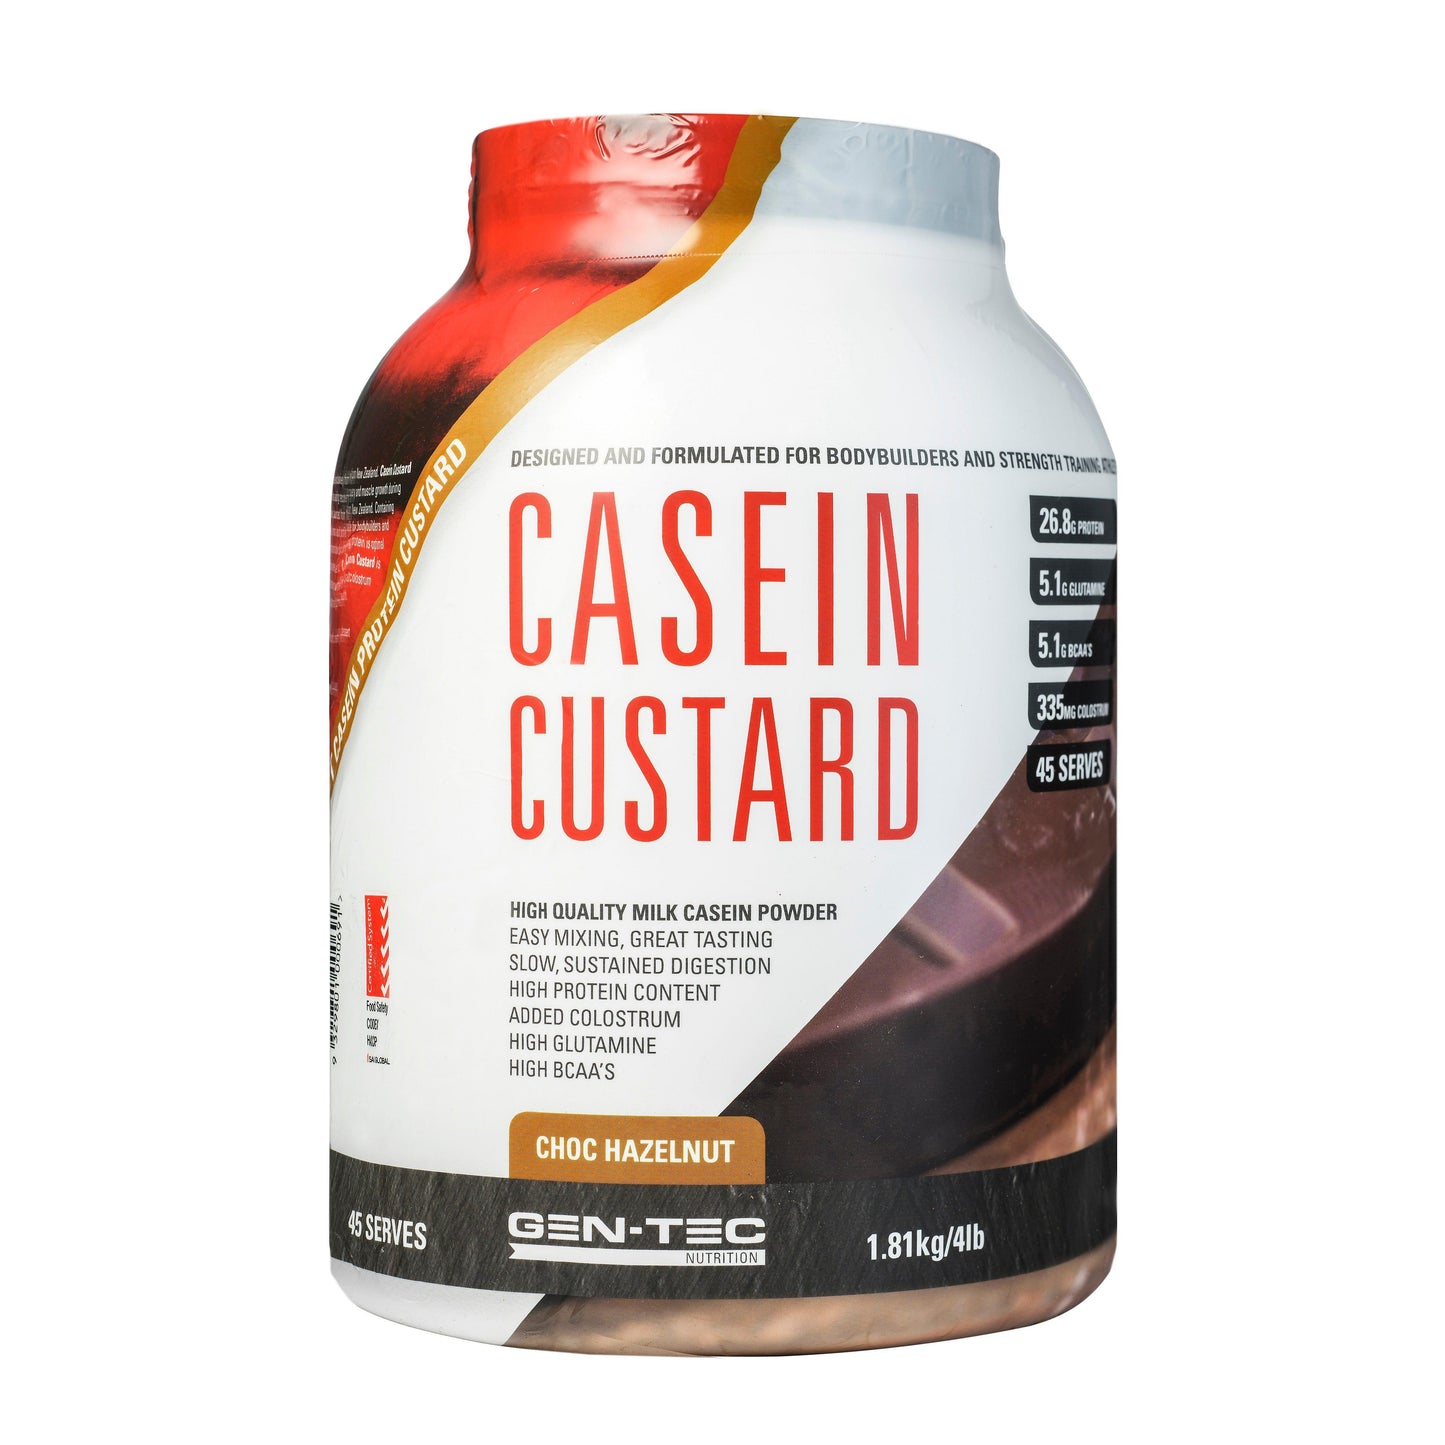 Gen-Tec Nutrition Casein Custard Protein 800g Or 1.81kg, Choc Hazelnut Flavour